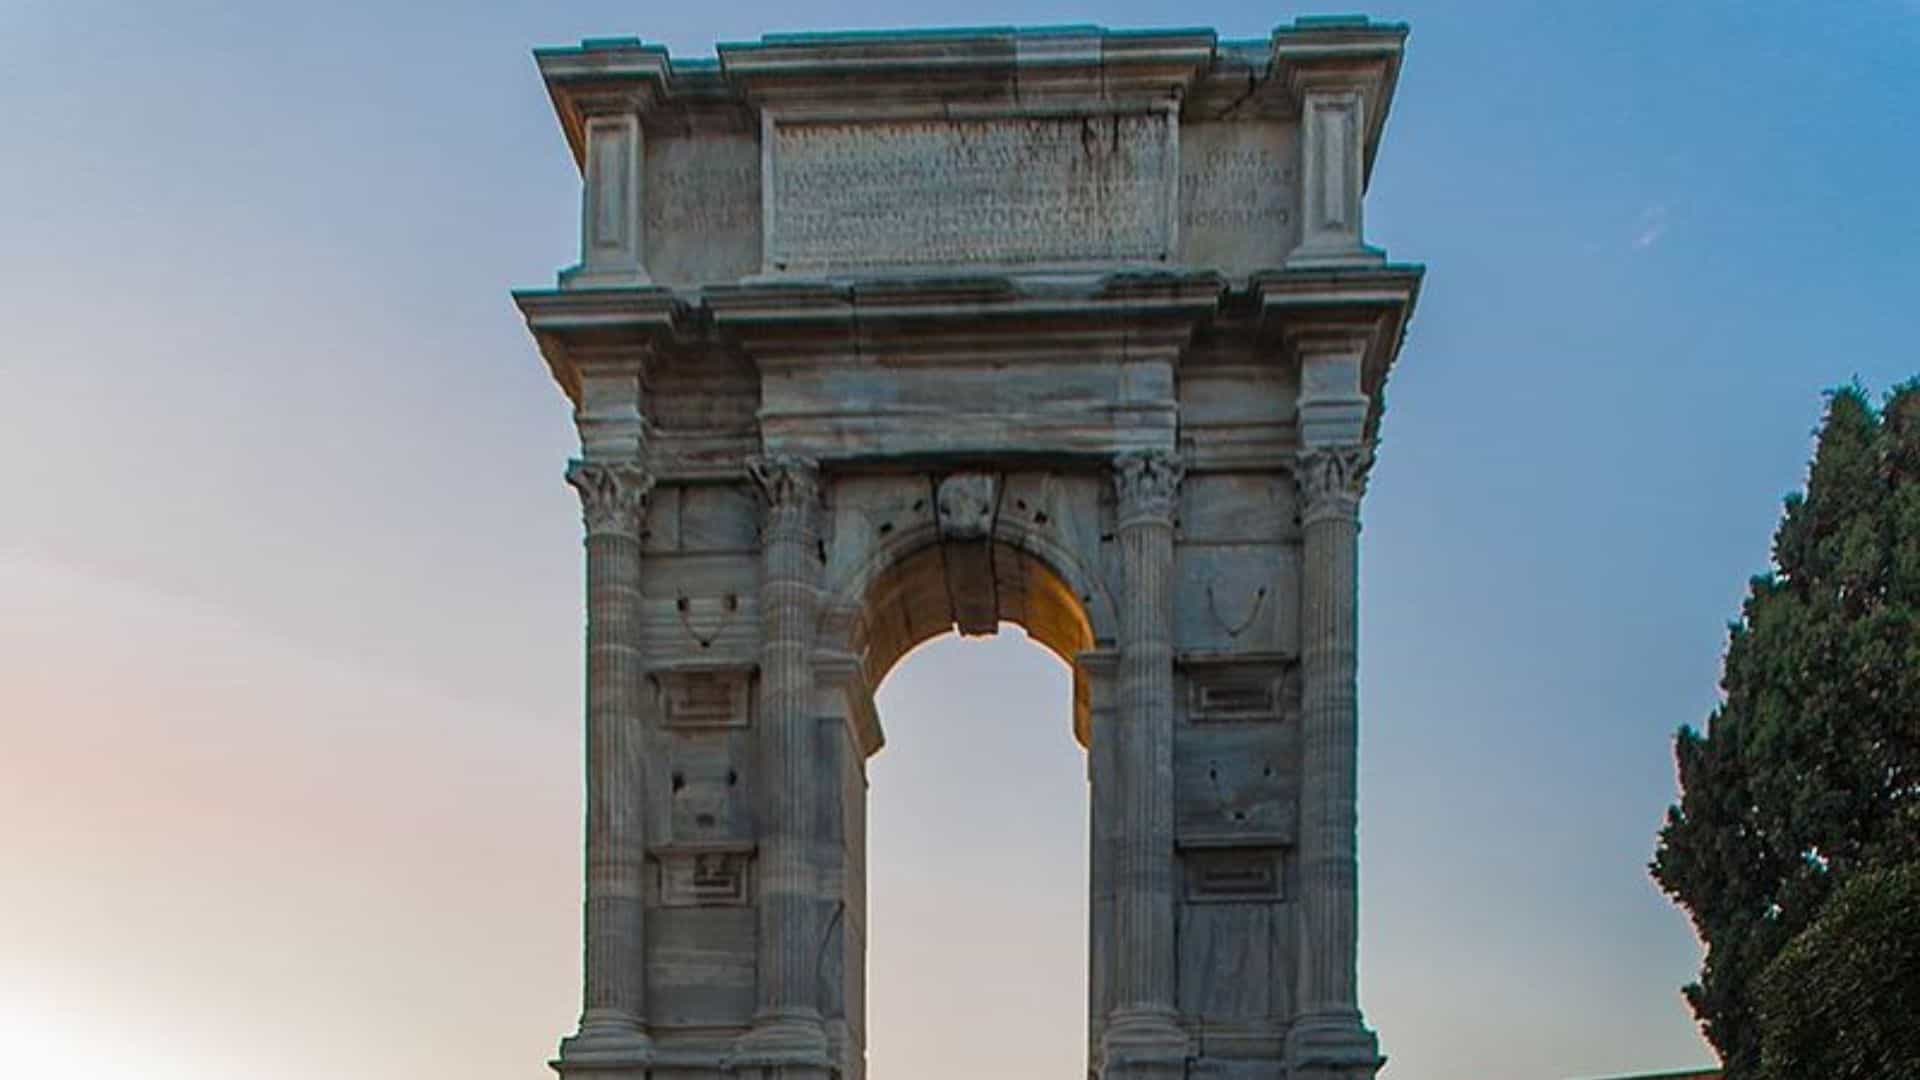 Arco di Traiano sul molo di Ancona (fonte immagine: Crsn.mrlt)